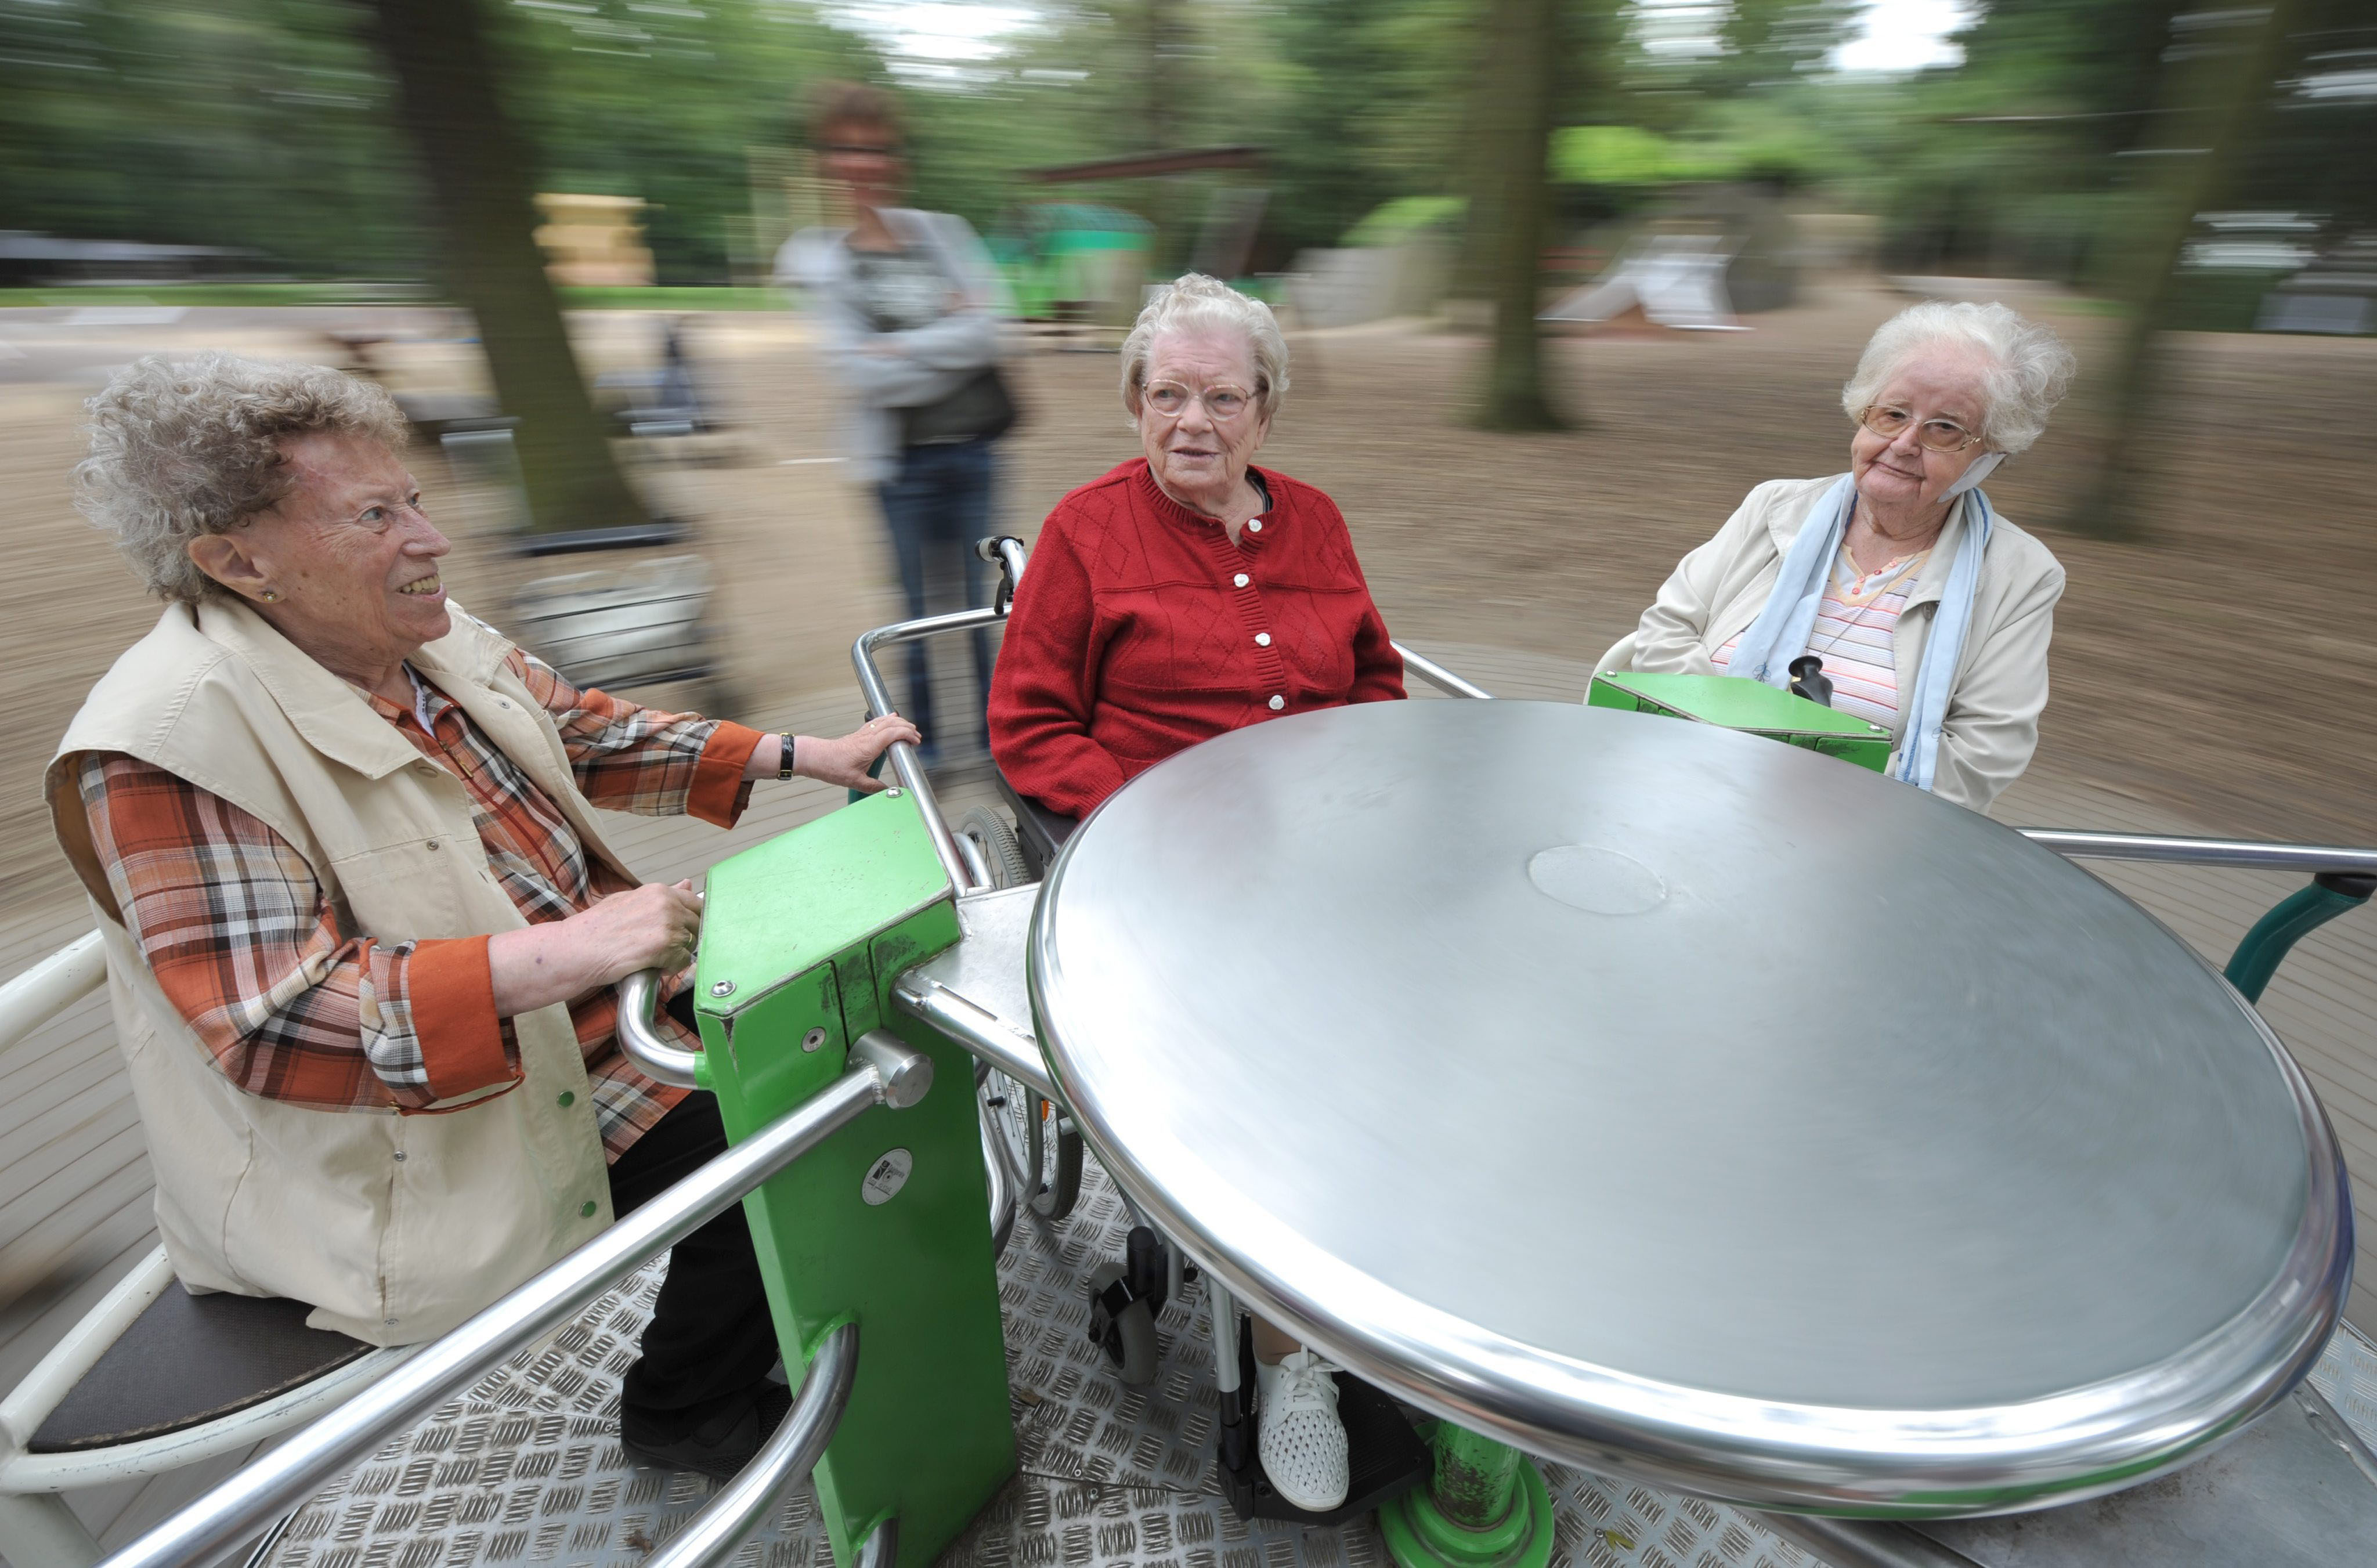 Tres mujeres jugando en una máquina diseñada para ancianos en un parque de Frankfurt (Alemania).